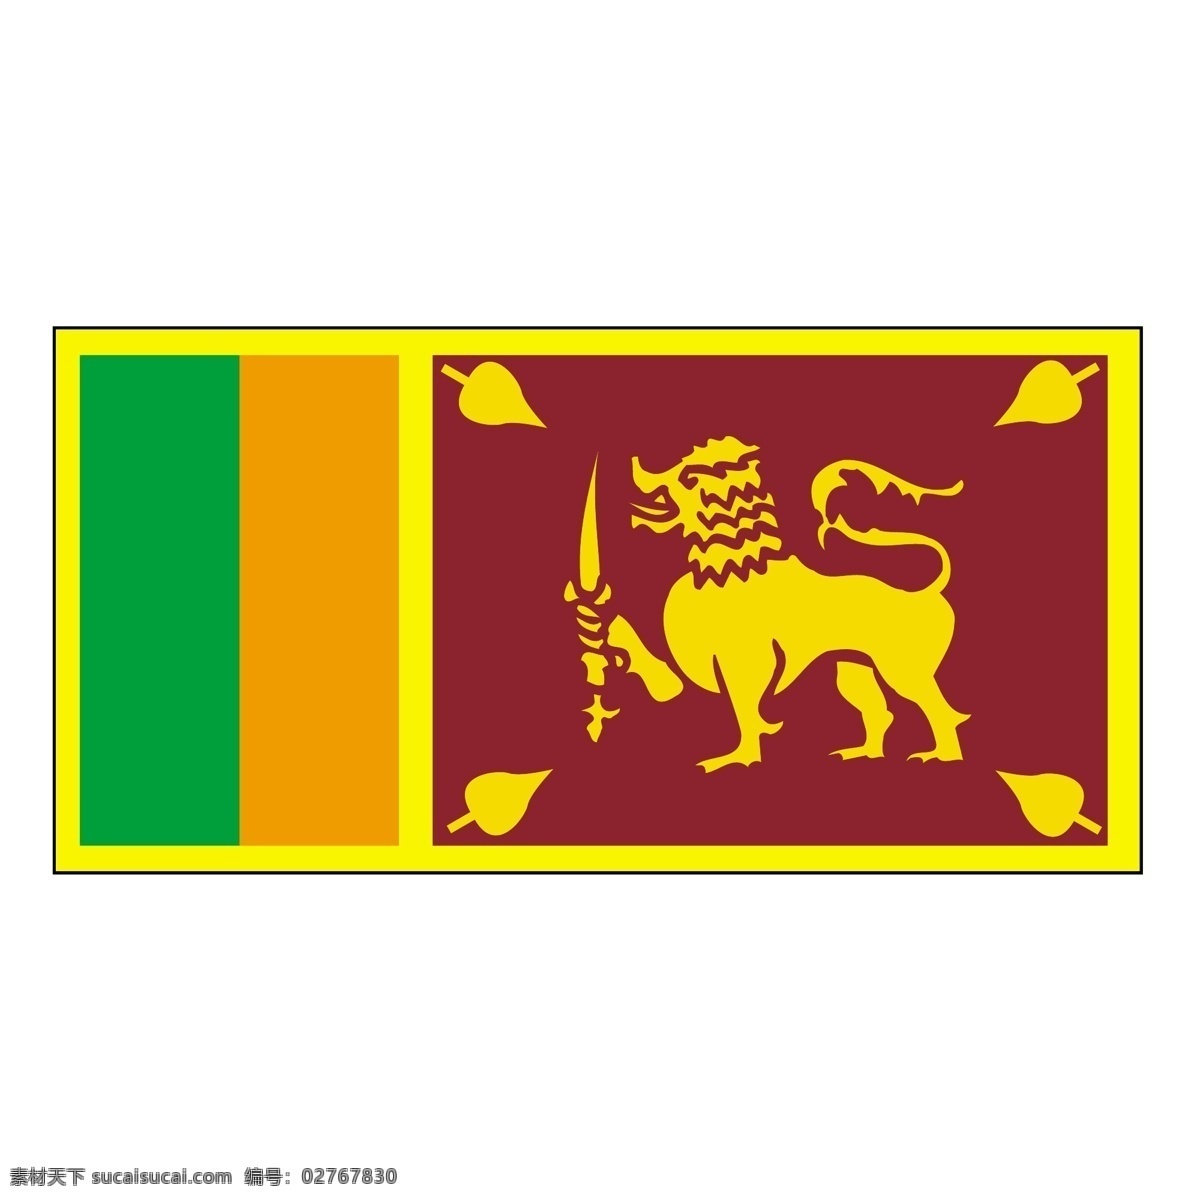 斯里兰卡 斯里兰卡国旗 传统 向量 标志 标志矢量矢量 艺术 矢量 图标 建筑家居